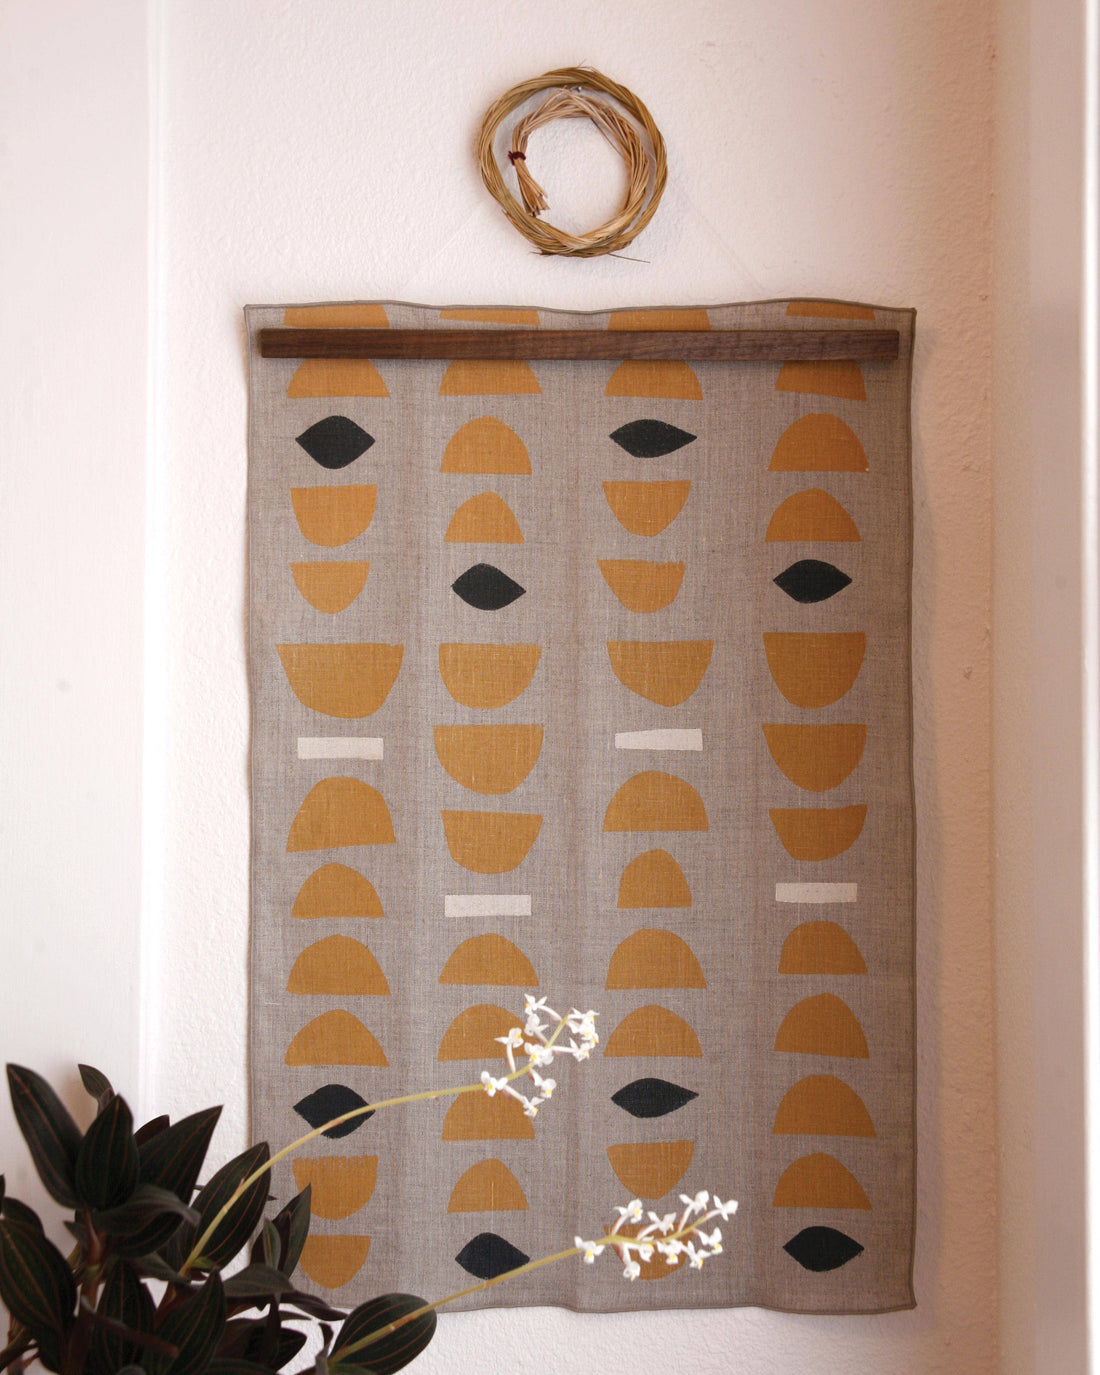 Willow Ship - 'Stacks' Block Printed Linen Tea Towel, Ochre colorway